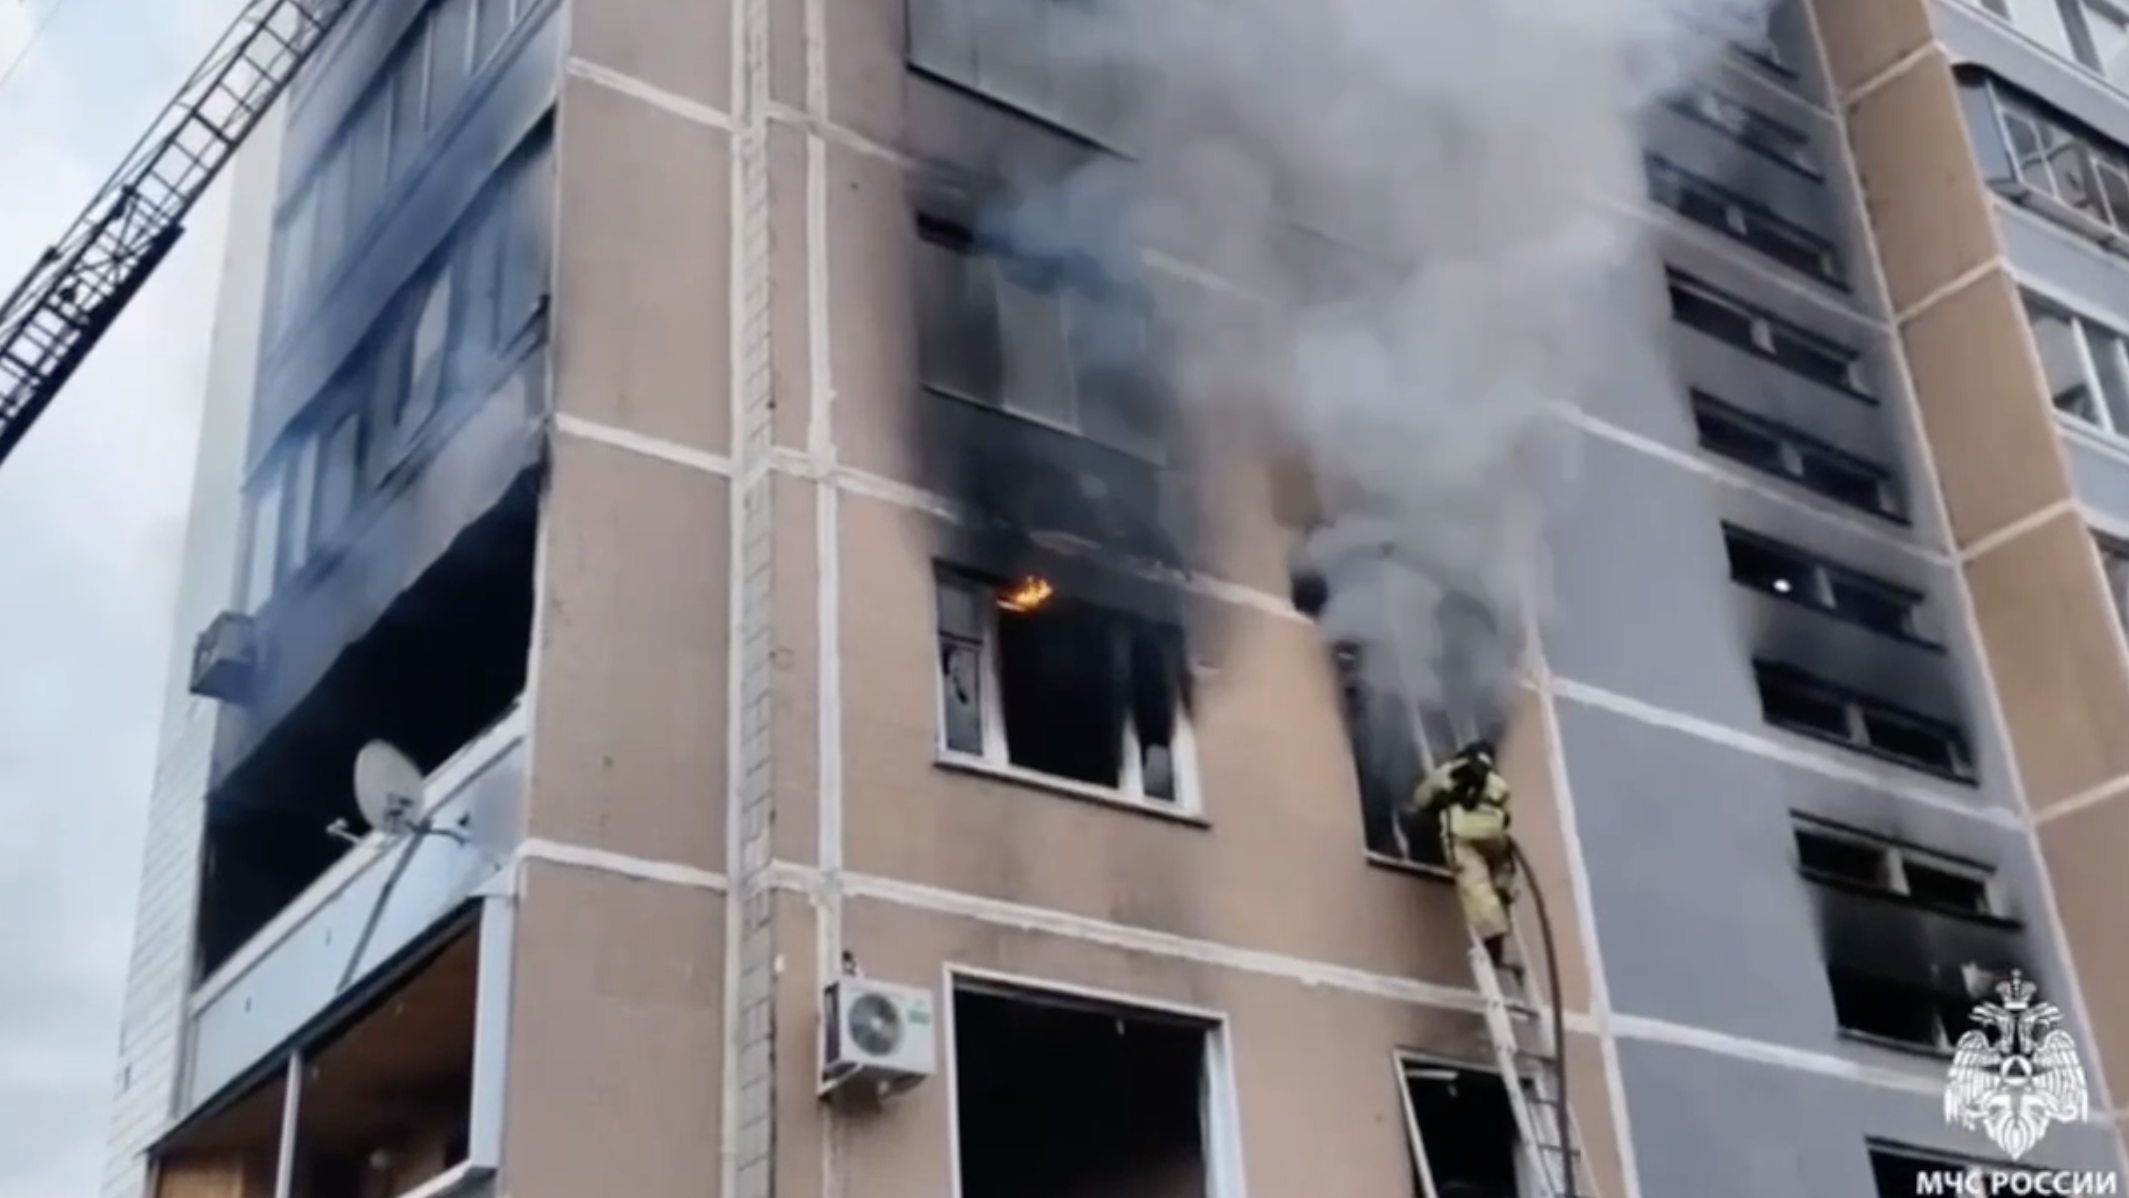 «Ребенка выбросило из окна взрывной волной»: очевидцы — о страшном пожаре на Корунковой, в котором погибли три человека